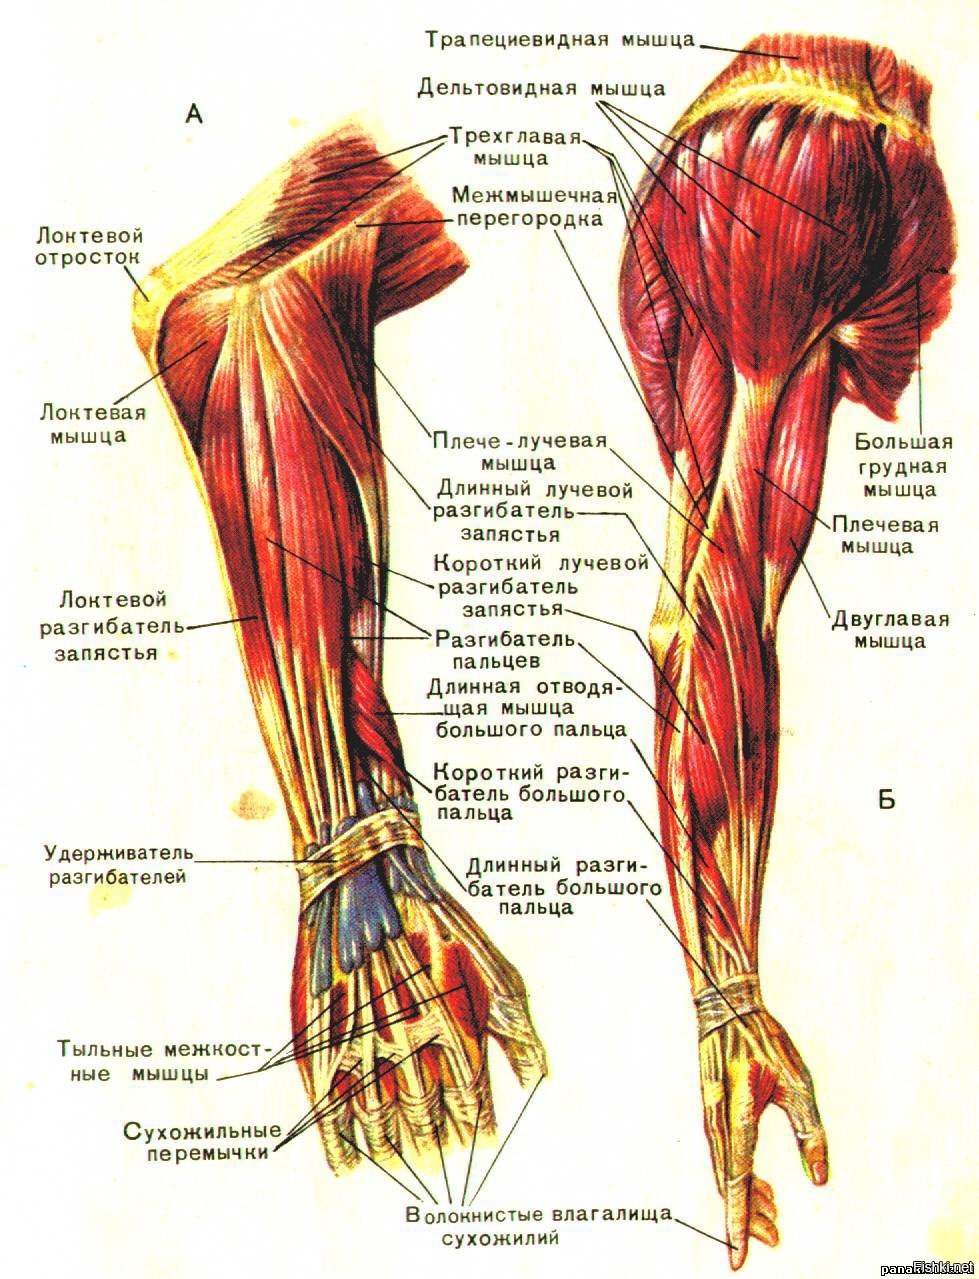 Анатомия мышц рук человека. .Мышцы верхней конечности (плечо и предплечье). Мышцы предплечья разгибатели анатомия. Анатомия руки человека мышцы и связки. Мышцы предплечья атлас.